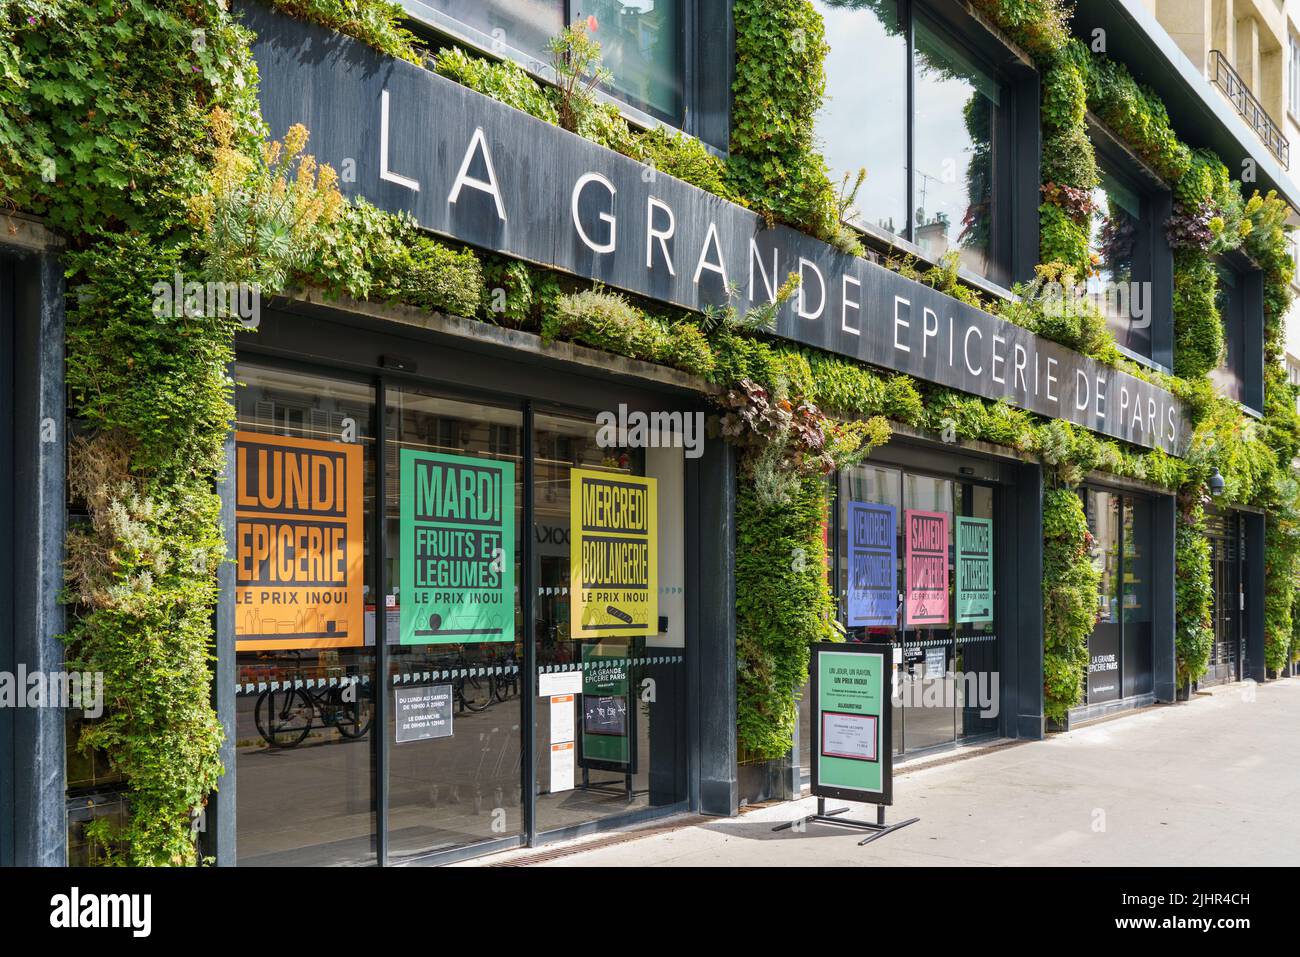 La grande épicerie de paris hi-res stock photography and images - Alamy